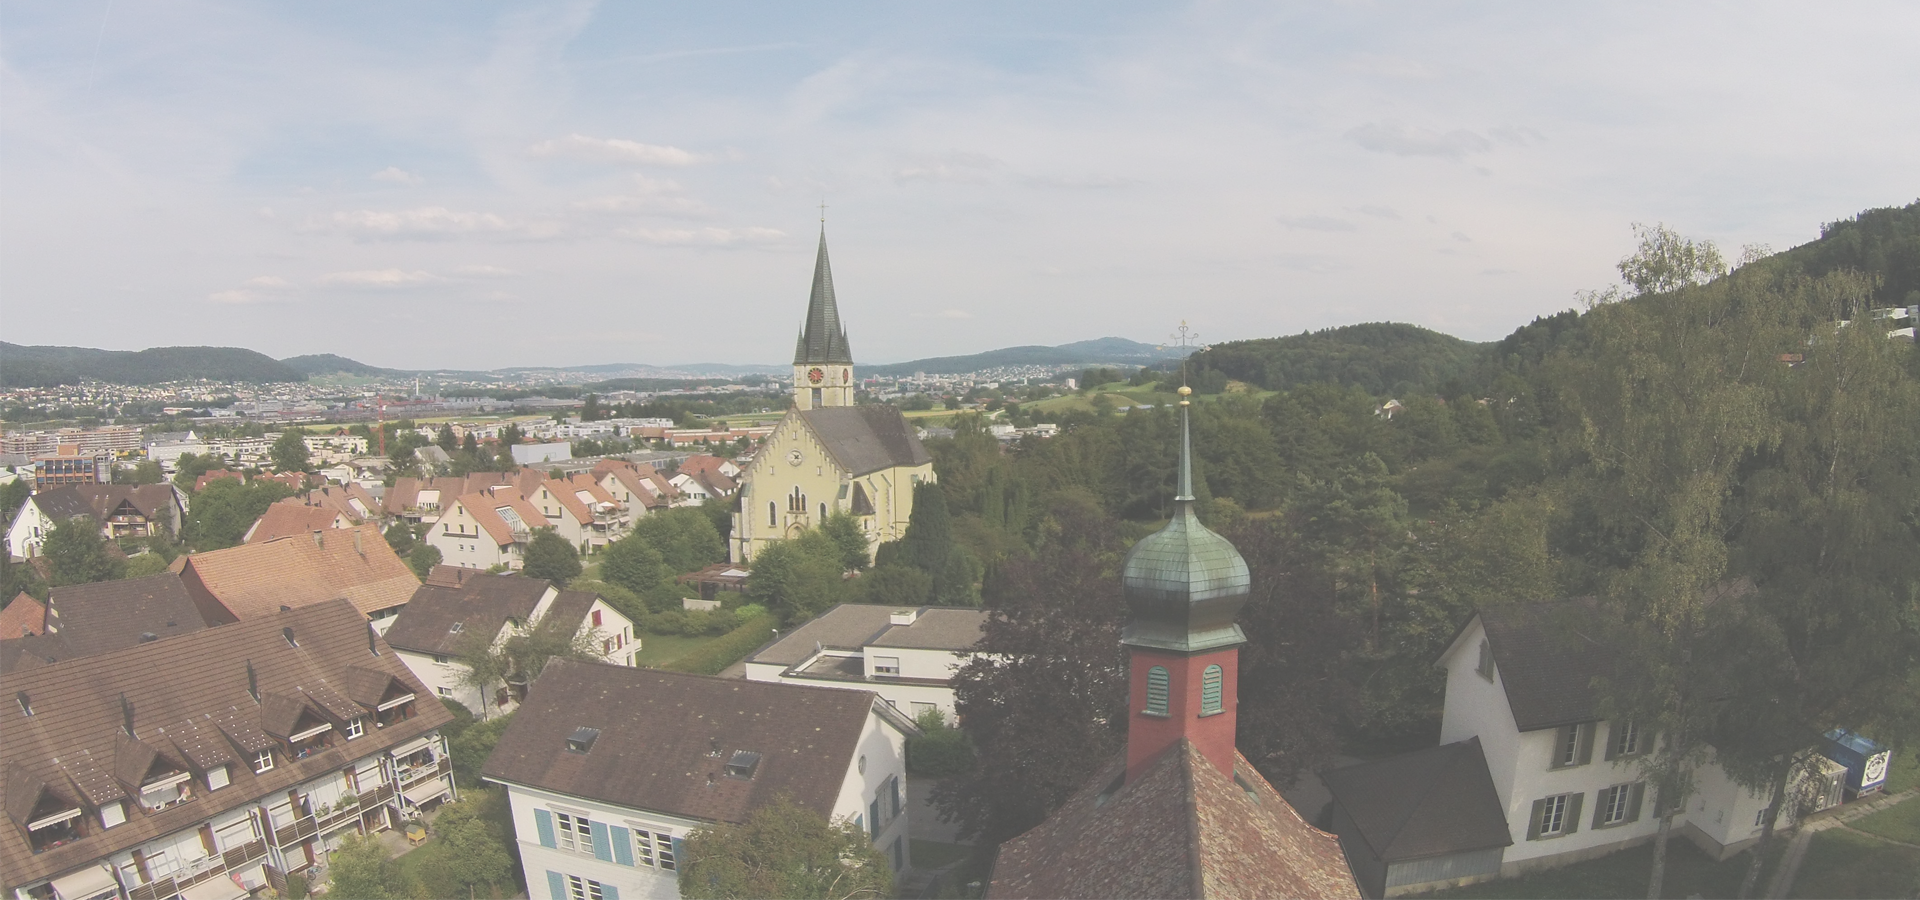 <b>Spreitenbach, Canton of Aargau, Switzerland</b>